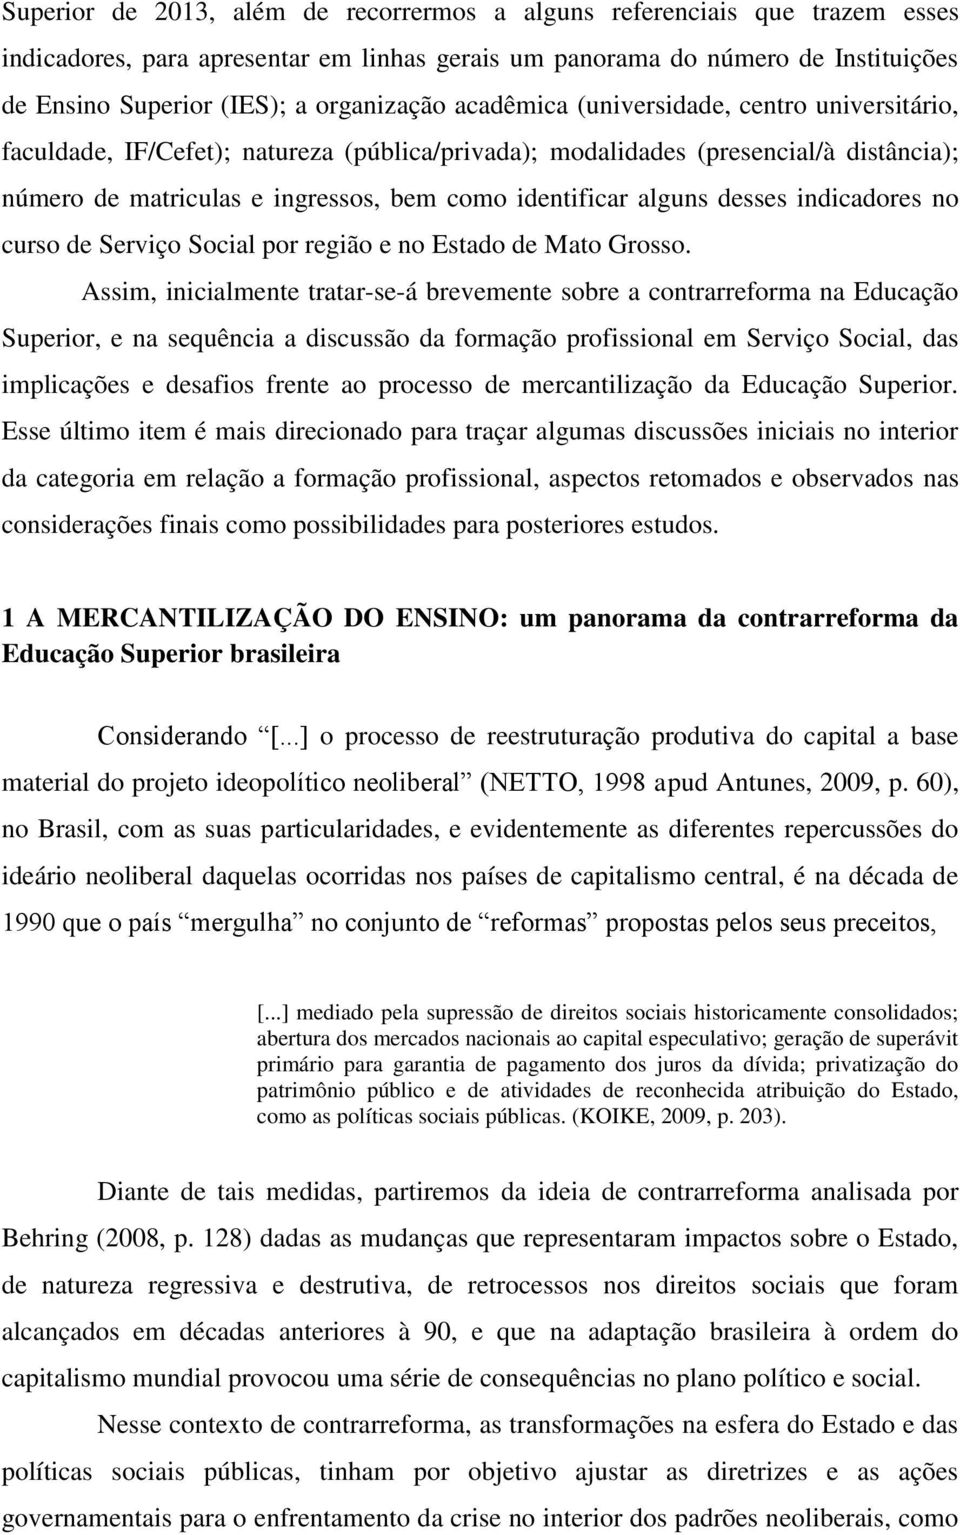 identificar alguns desses indicadores no curso de Serviço Social por região e no Estado de Mato Grosso.